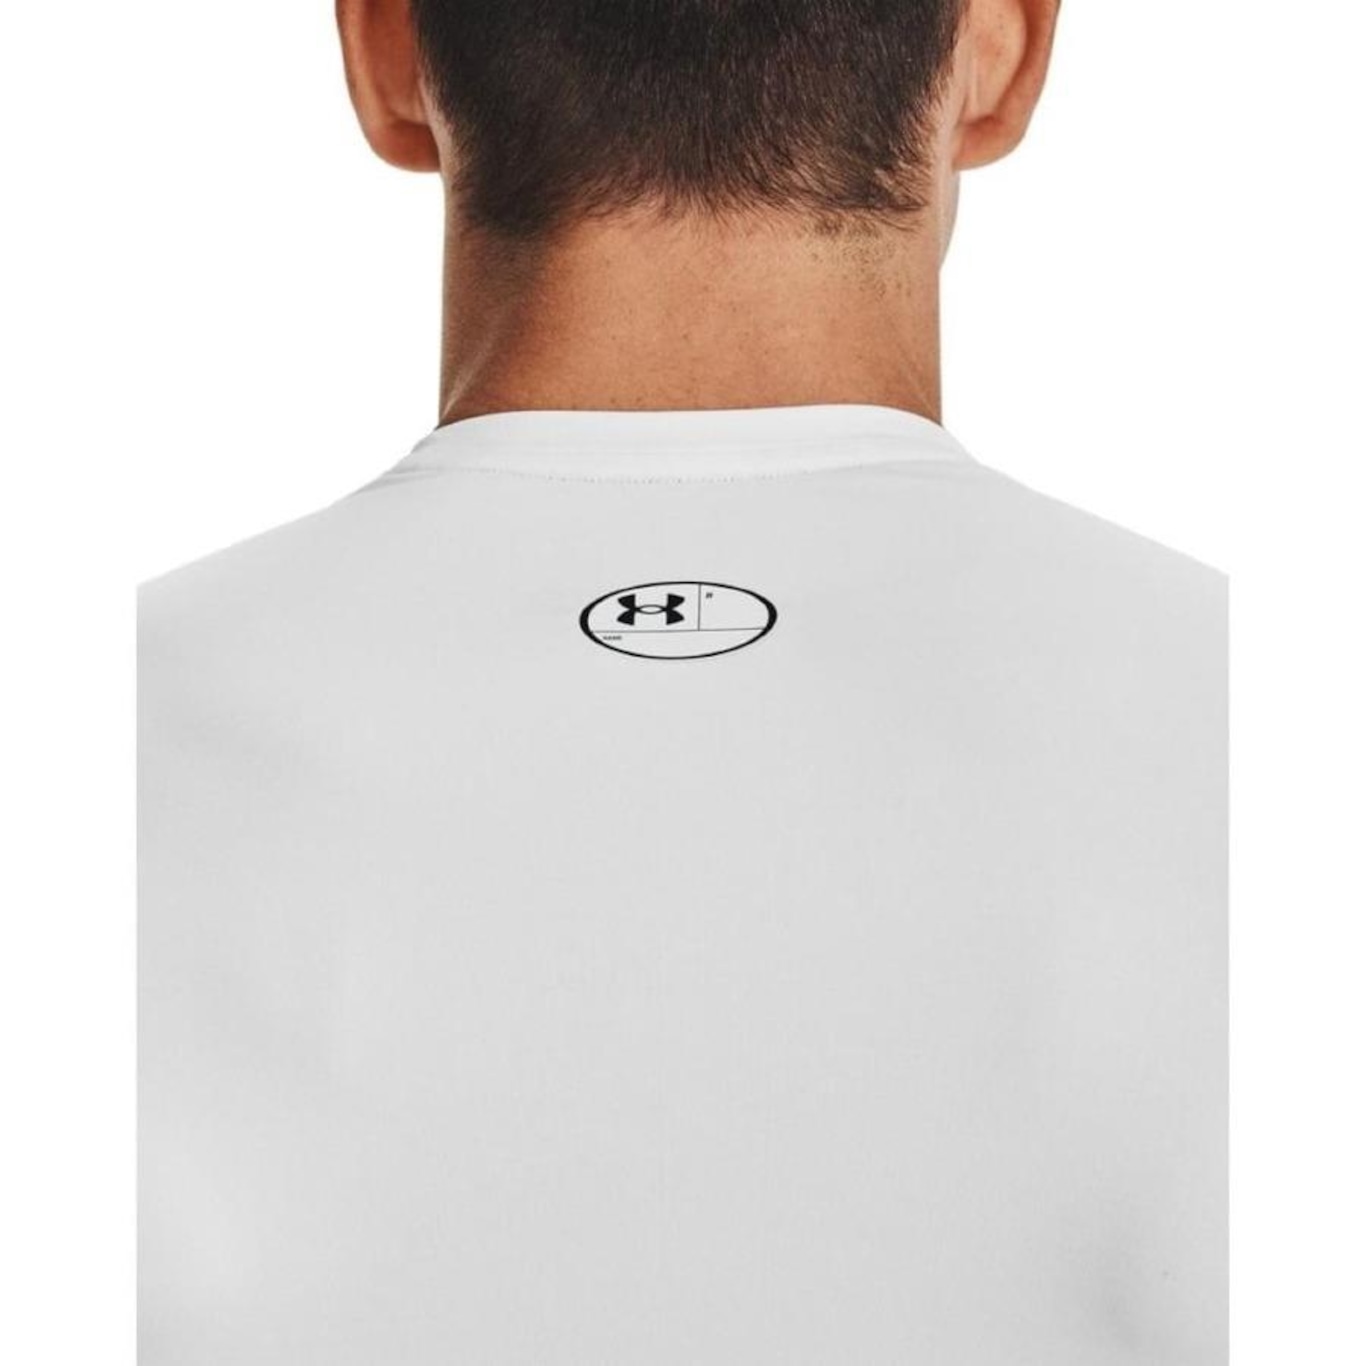 Camiseta de Compressão Under Armour Heatgear Masculina